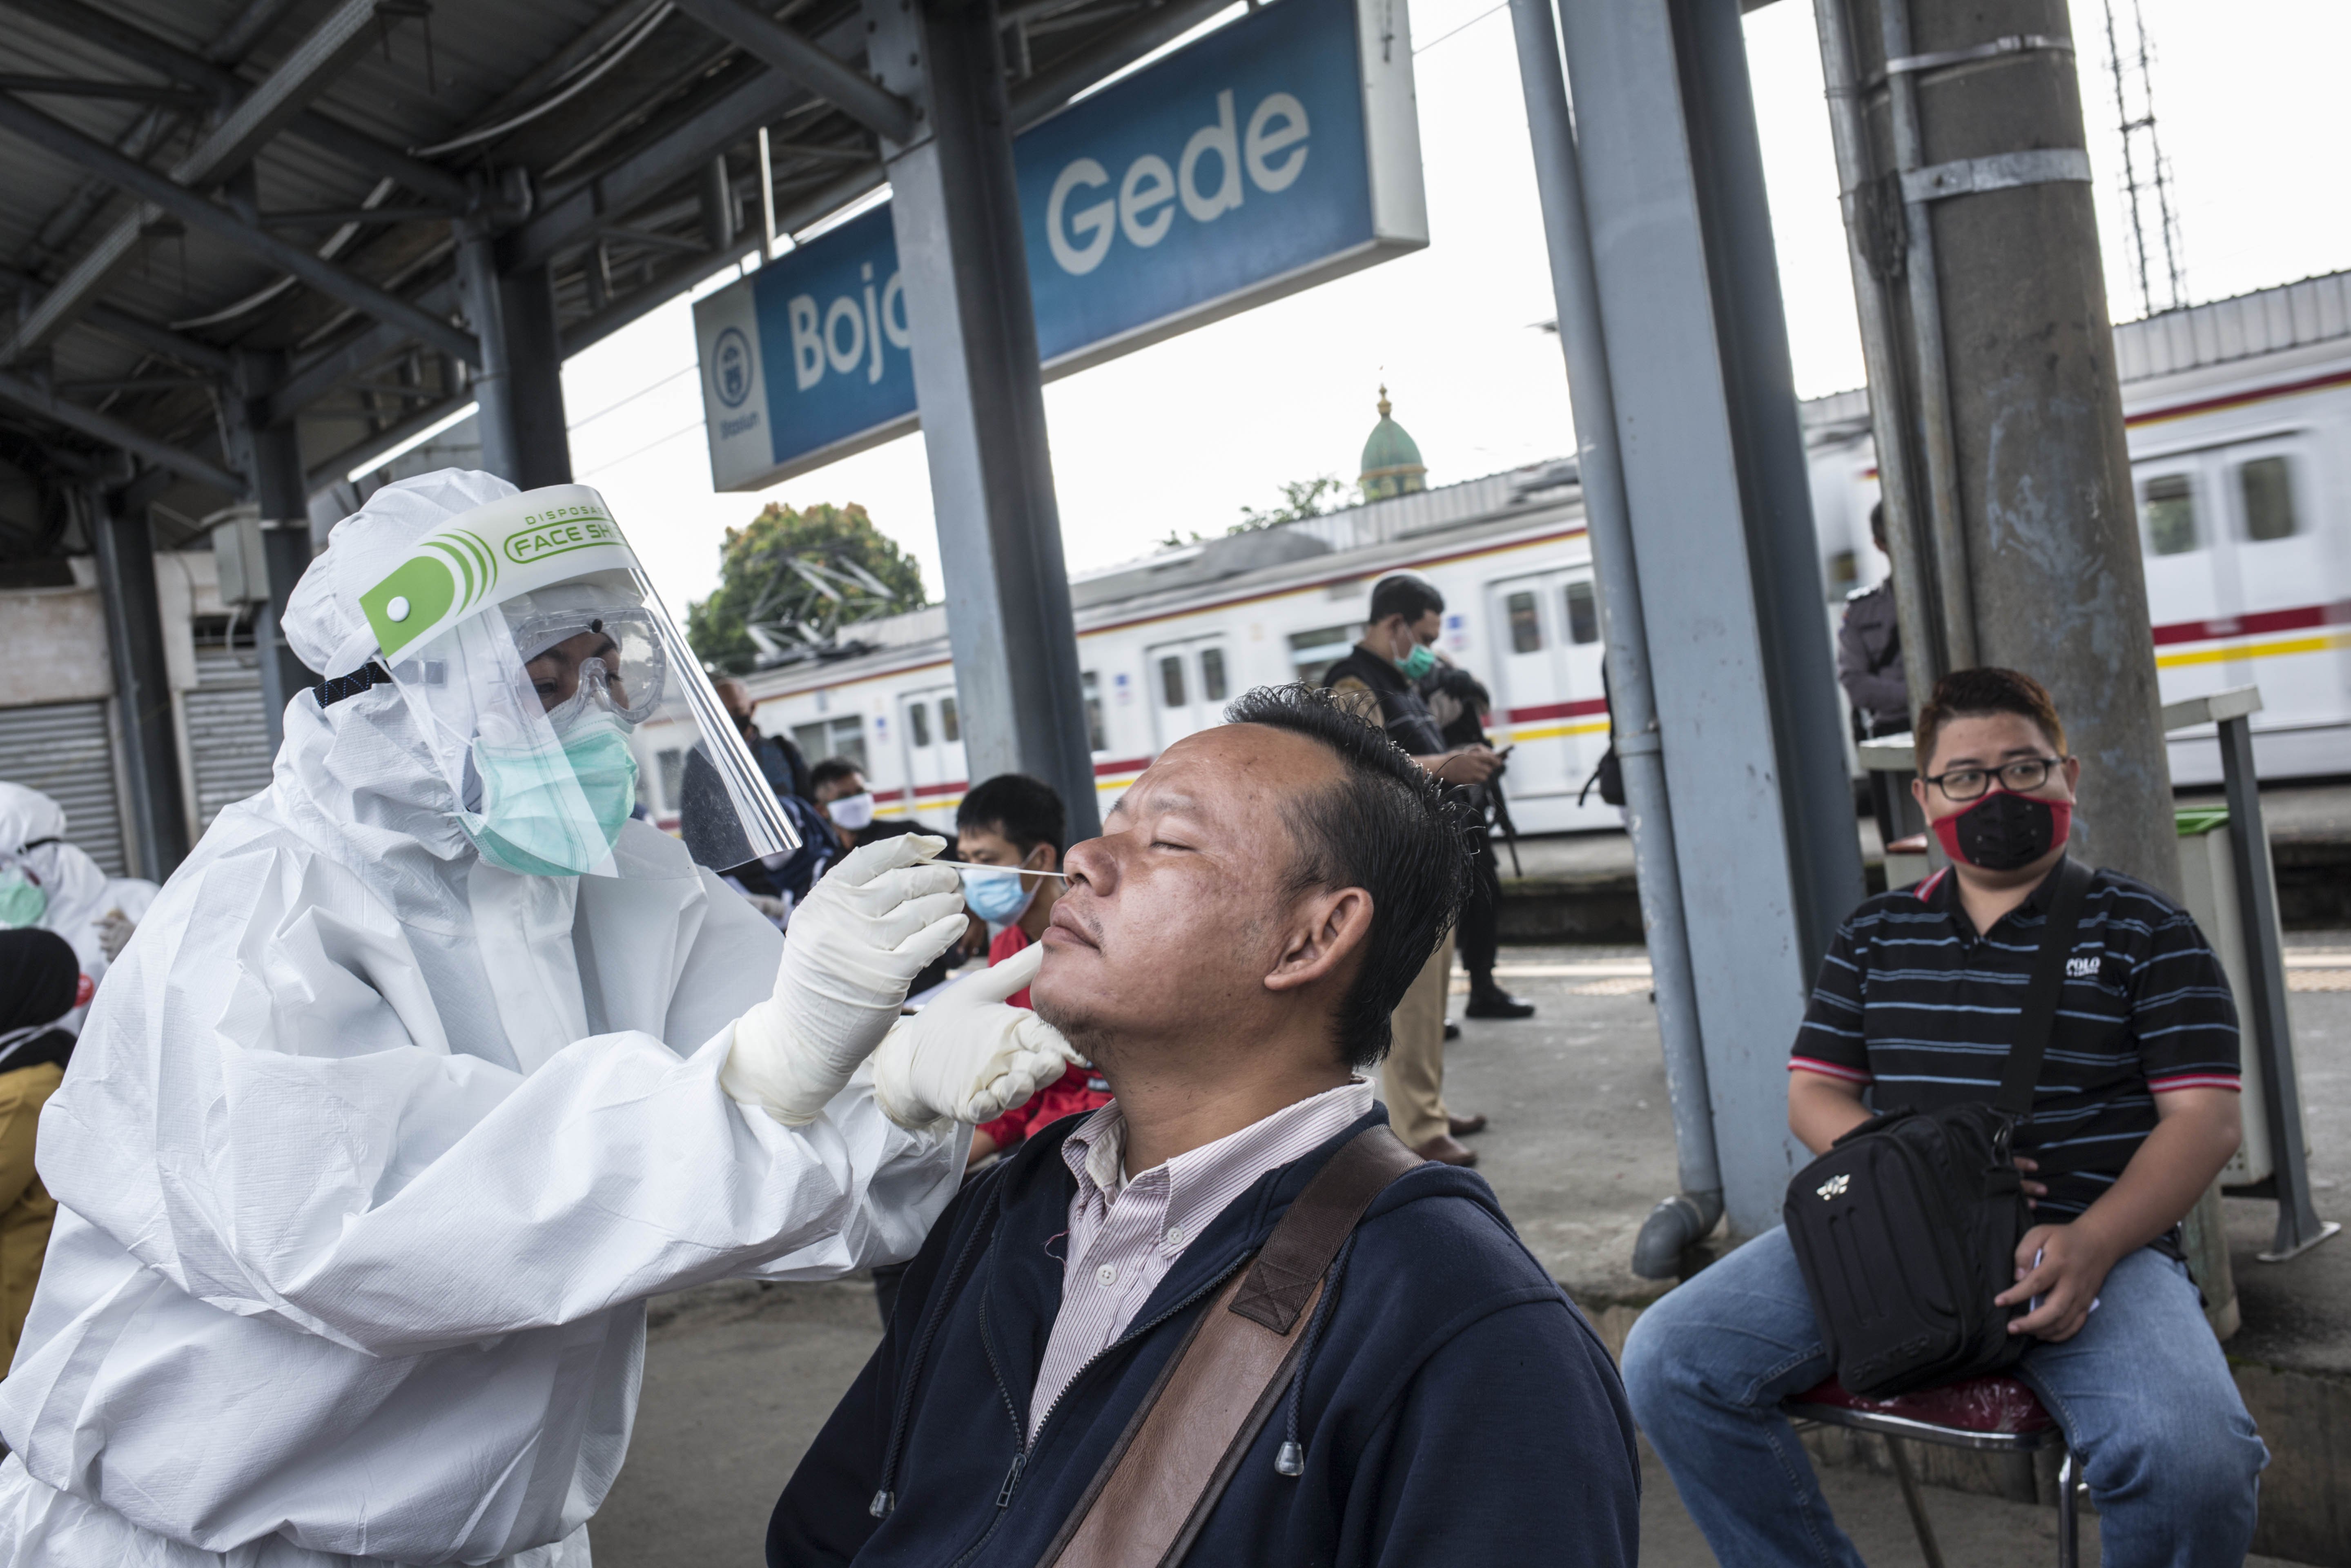 Petugas medis melakukan tes Swab COVID-19 kepada penumpang KRL Commuter Line di Stasiun Bojong Gede, Bogor, Jawa Barat, Senin (11/5). Tes swab tersebut dilakukan kepada 200 calon penumpang KRL secara acak sebagai salah satu langkah untuk mendeteksi dan mencegah penyebaran virus COVID-19 di transportasi umum.